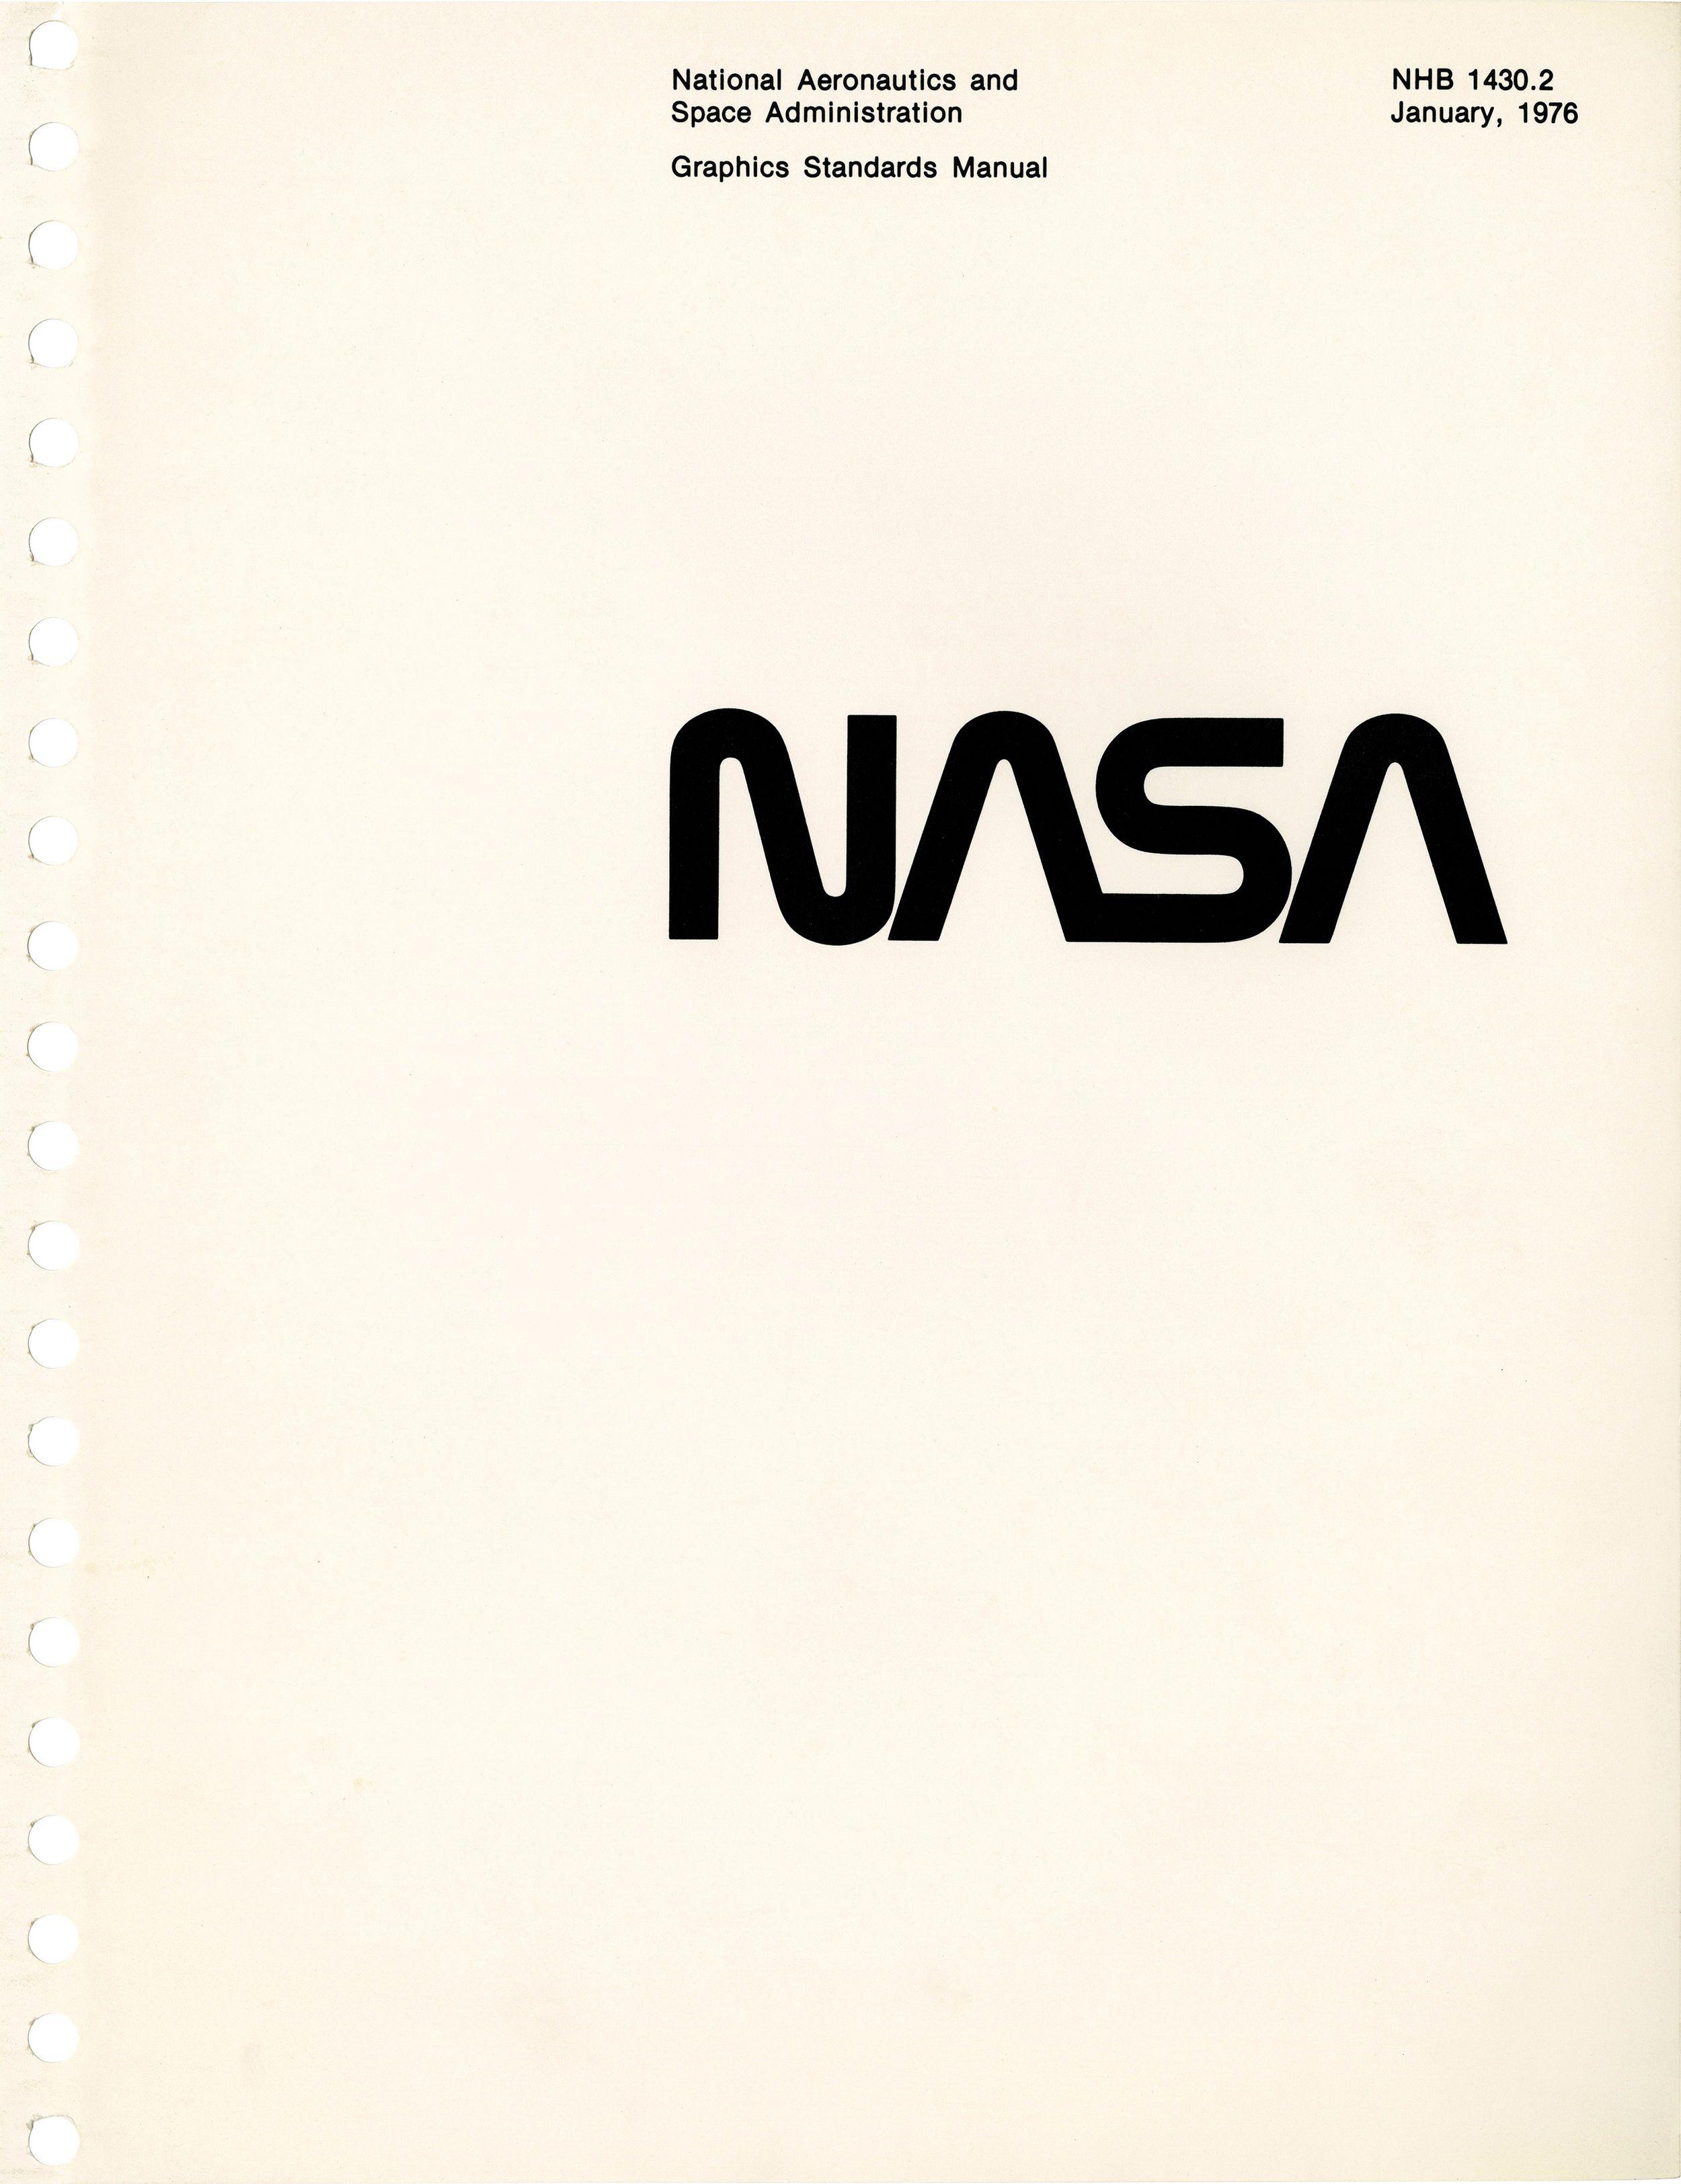 Space.com Logo - 1975 NASA Graphics Standards Manual